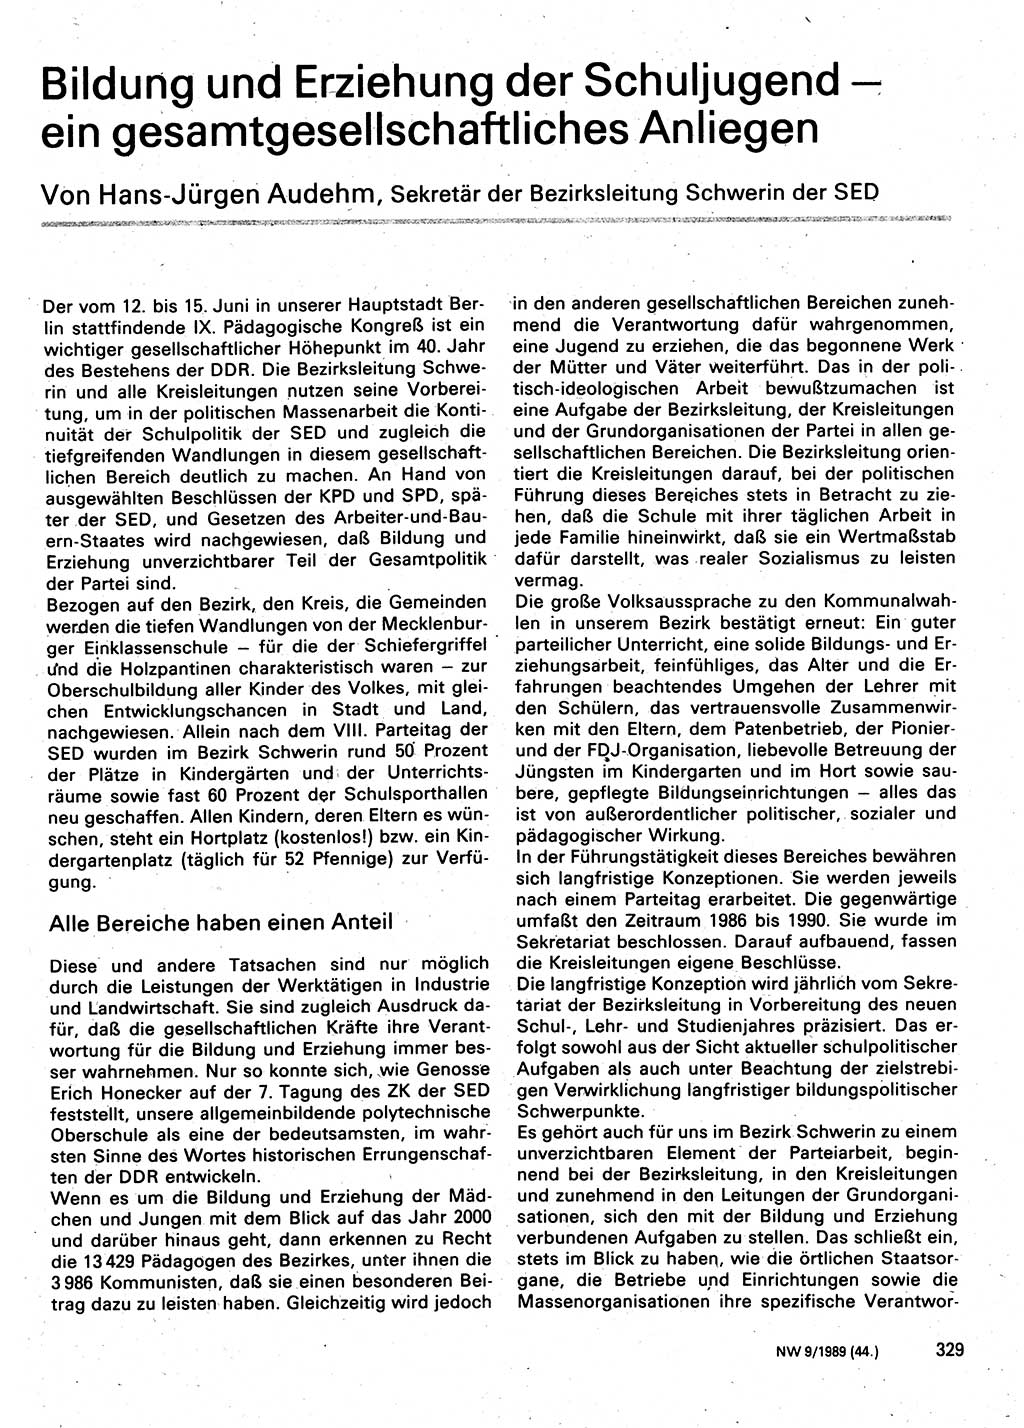 Neuer Weg (NW), Organ des Zentralkomitees (ZK) der SED (Sozialistische Einheitspartei Deutschlands) für Fragen des Parteilebens, 44. Jahrgang [Deutsche Demokratische Republik (DDR)] 1989, Seite 329 (NW ZK SED DDR 1989, S. 329)